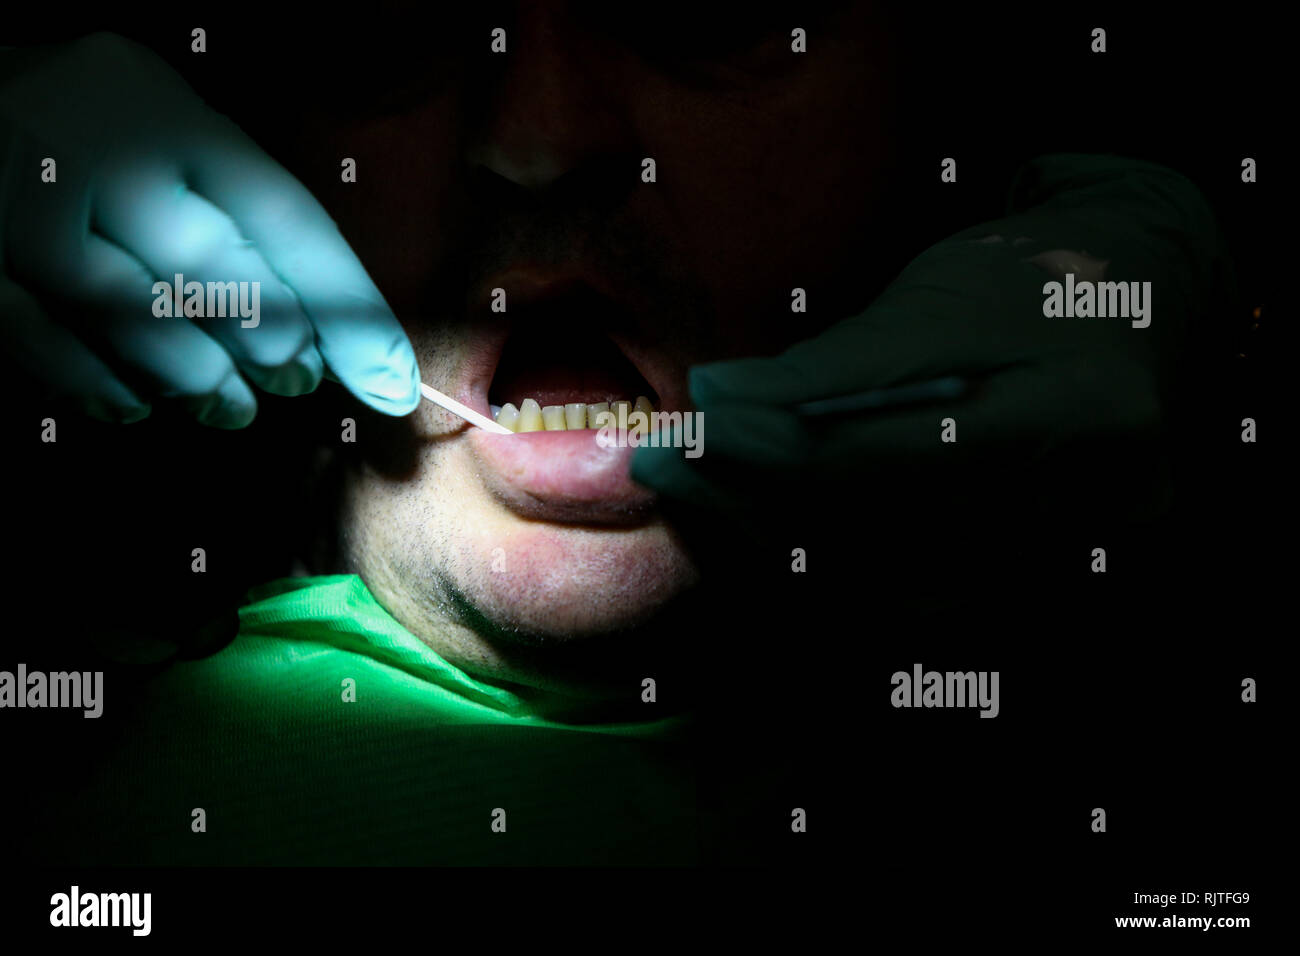 Dettagli con le mani di una donna dentista con i guanti chirurgici, lavorando con strumenti specifici all'interno della bocca di un paziente Foto Stock